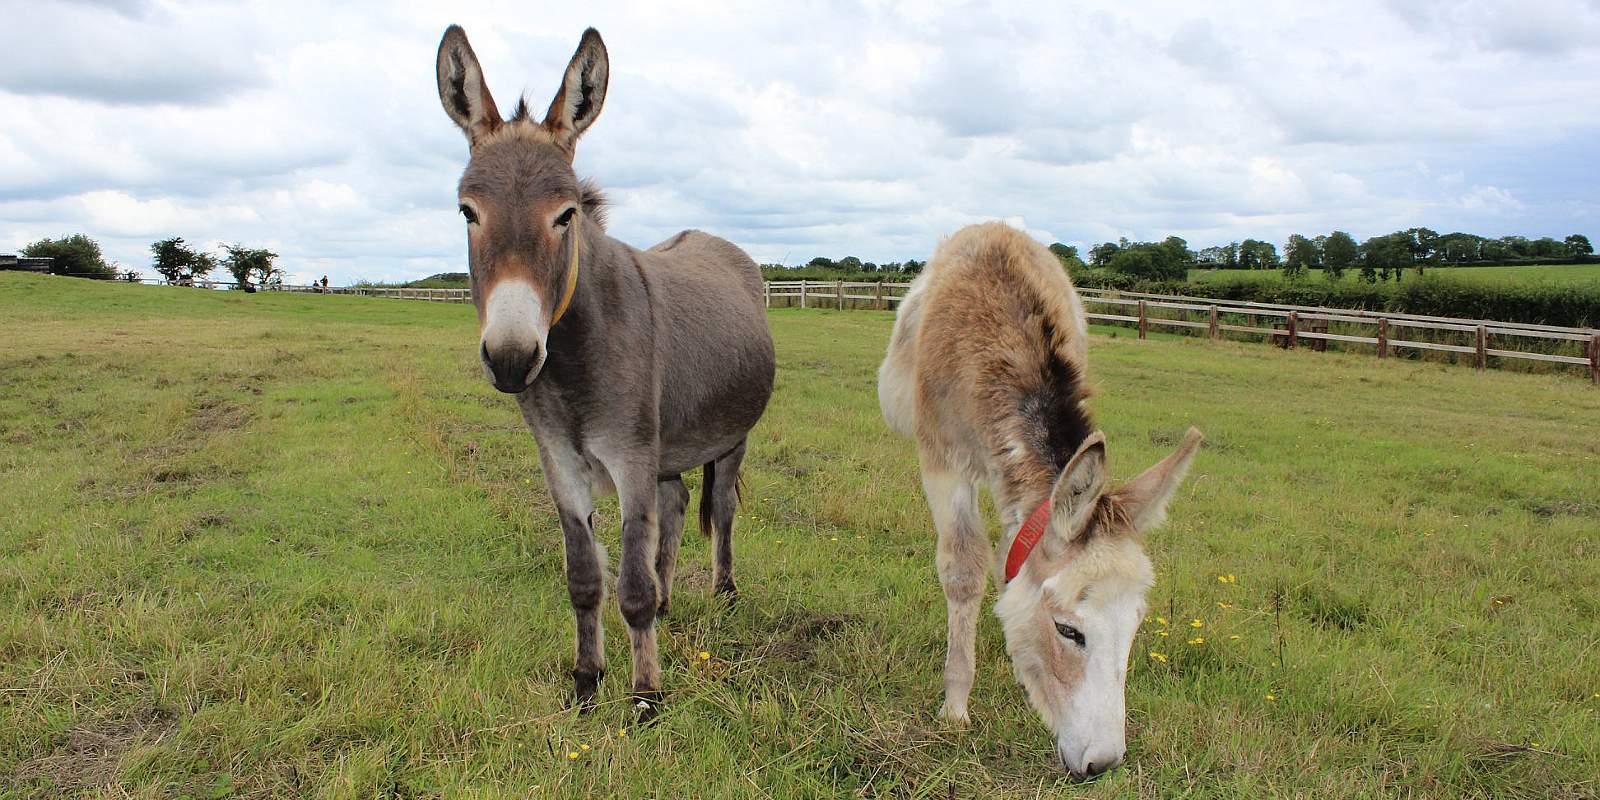 Pair of donkeys